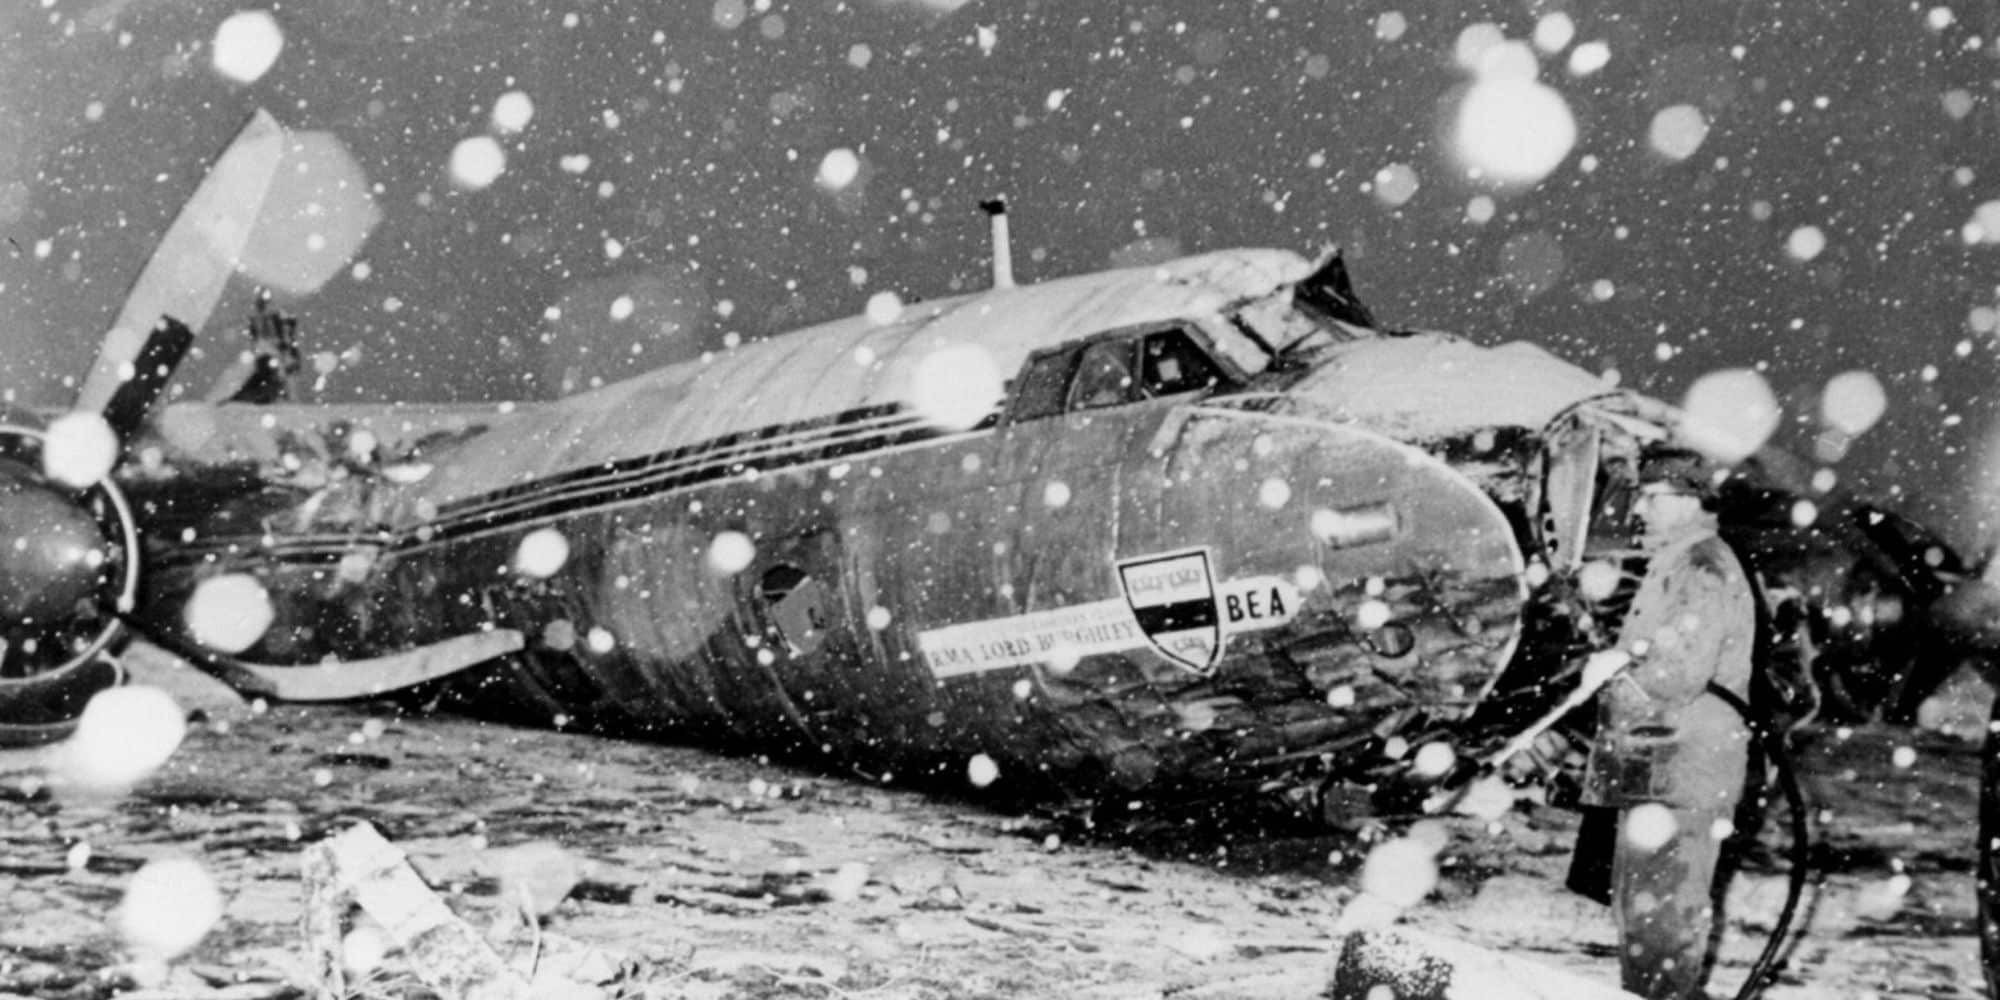 Σαν σήμερα: Η αεροπορική τραγωδία που σημάδεψε τη Μάντσεστερ Γιουνάιτεντ - Όταν τα ρολόγια «πάγωσαν» στις 3:04 μ.μ.